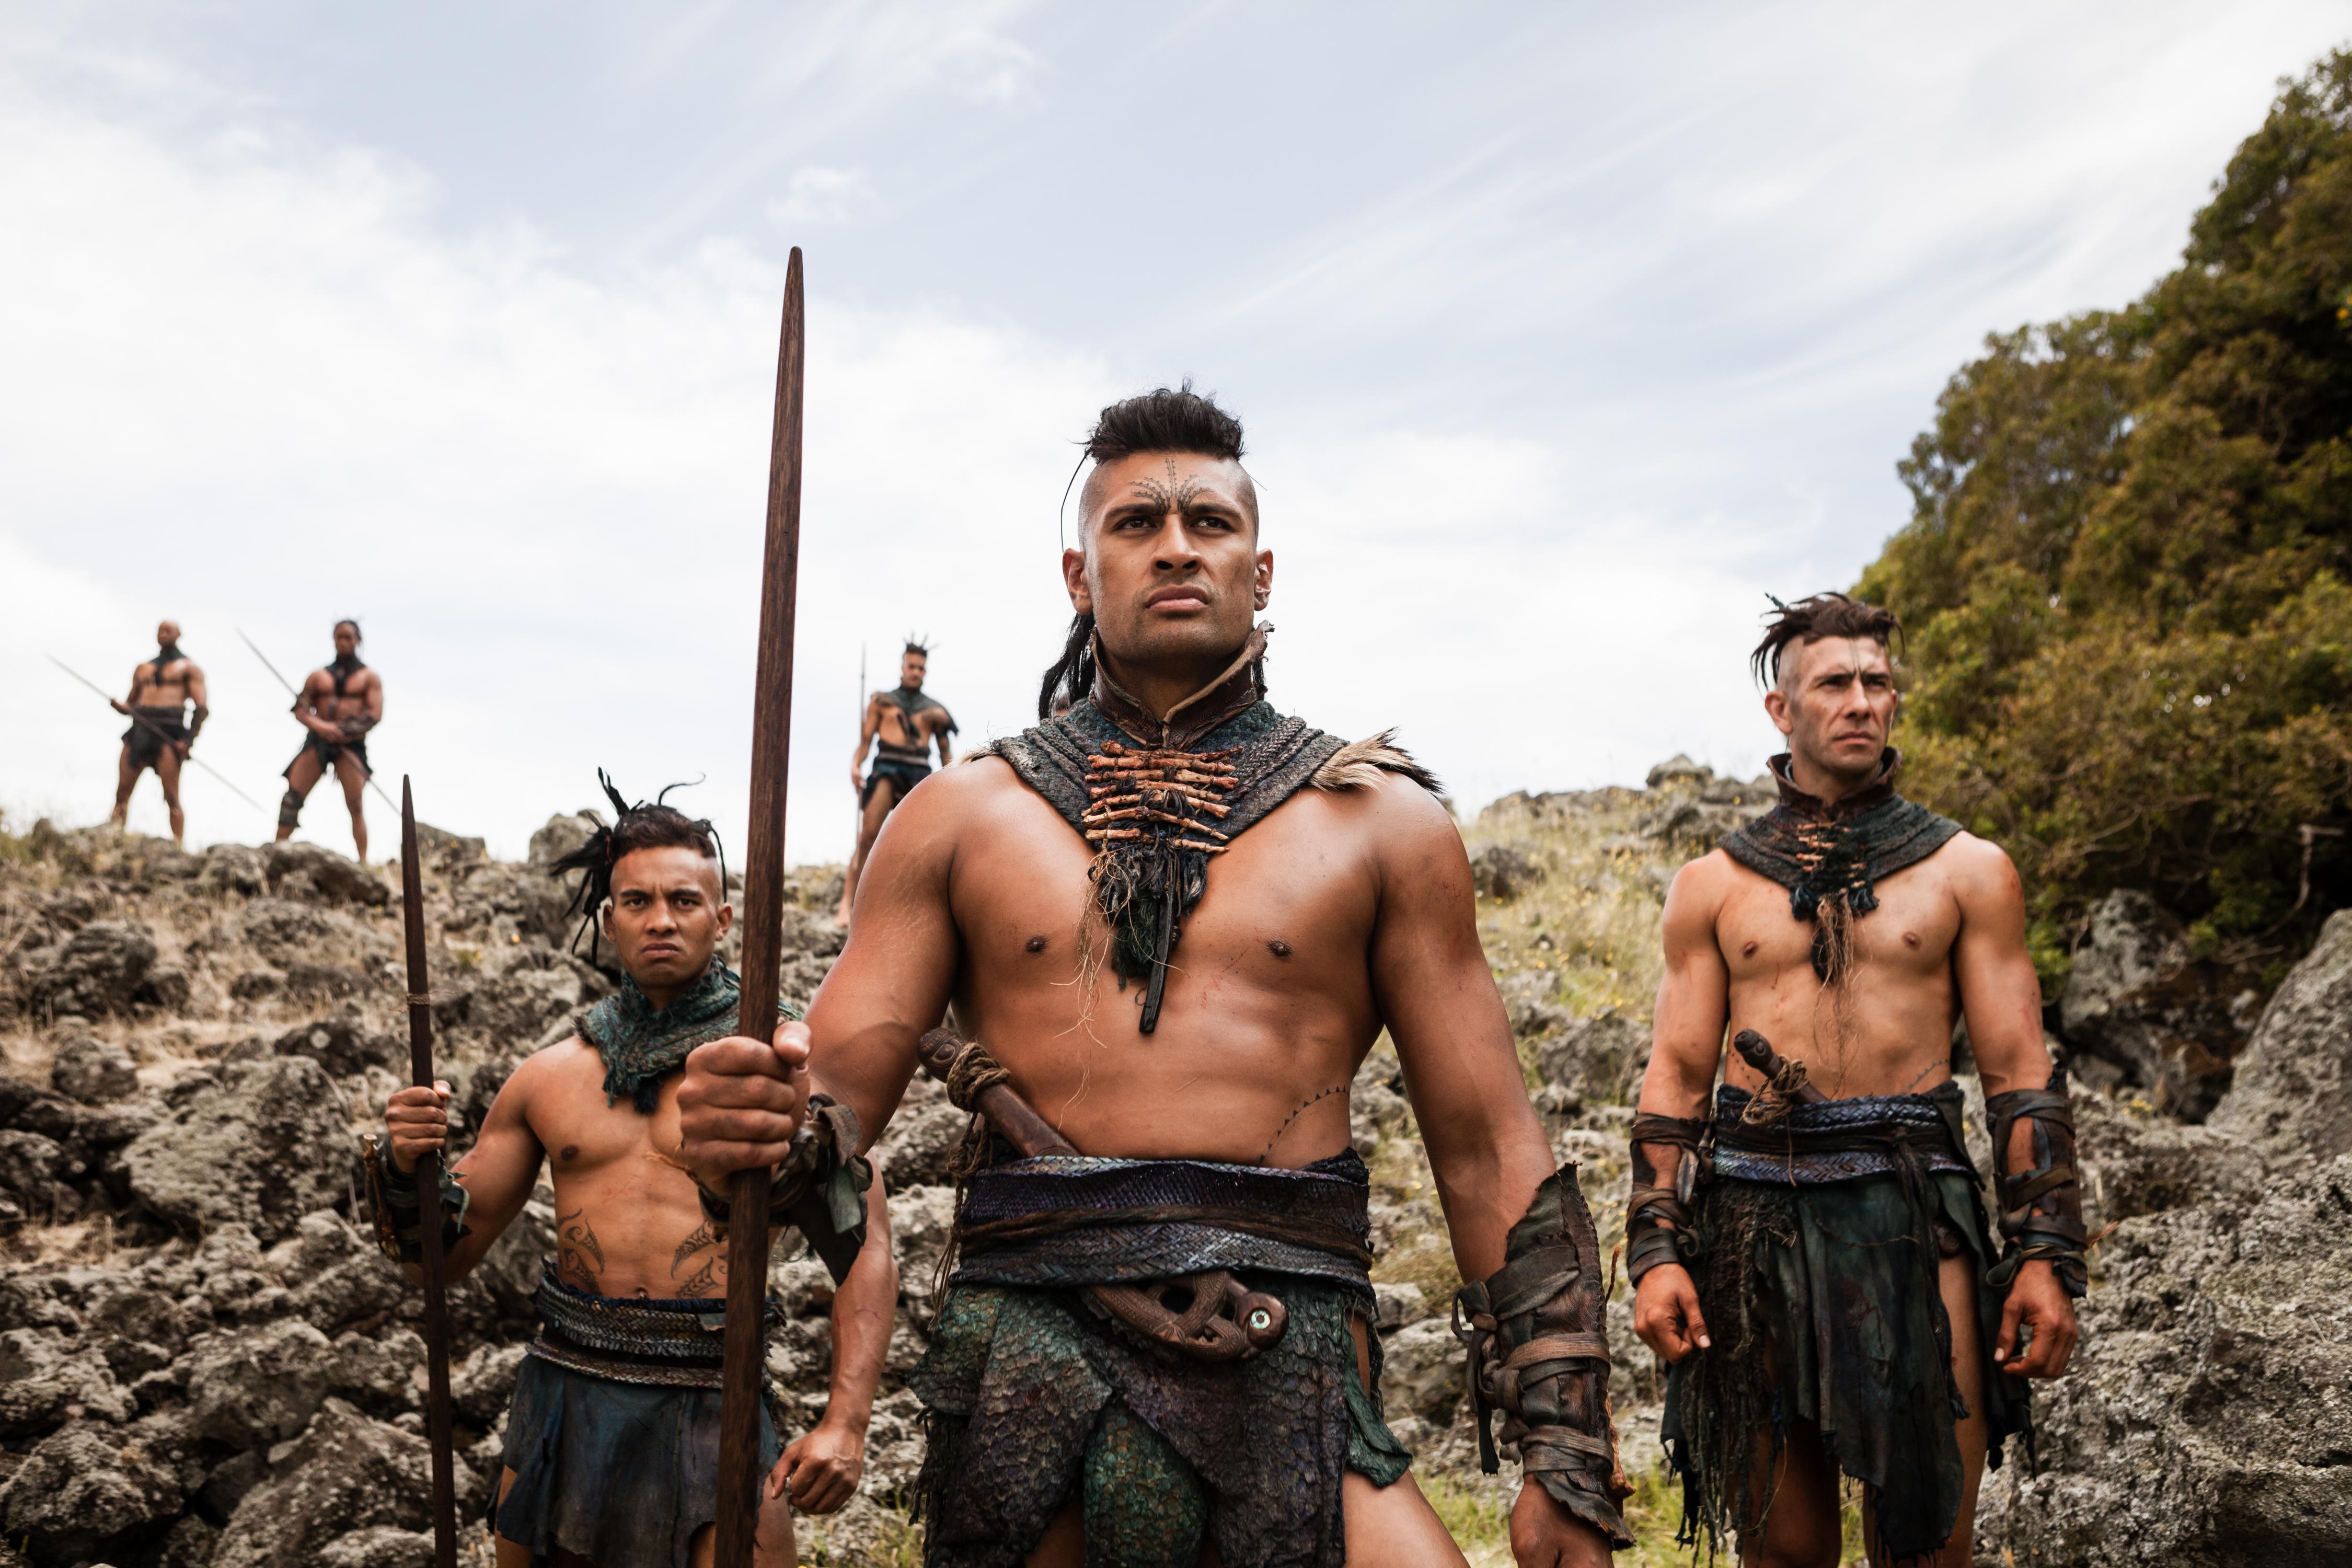 Nude tribe men maori